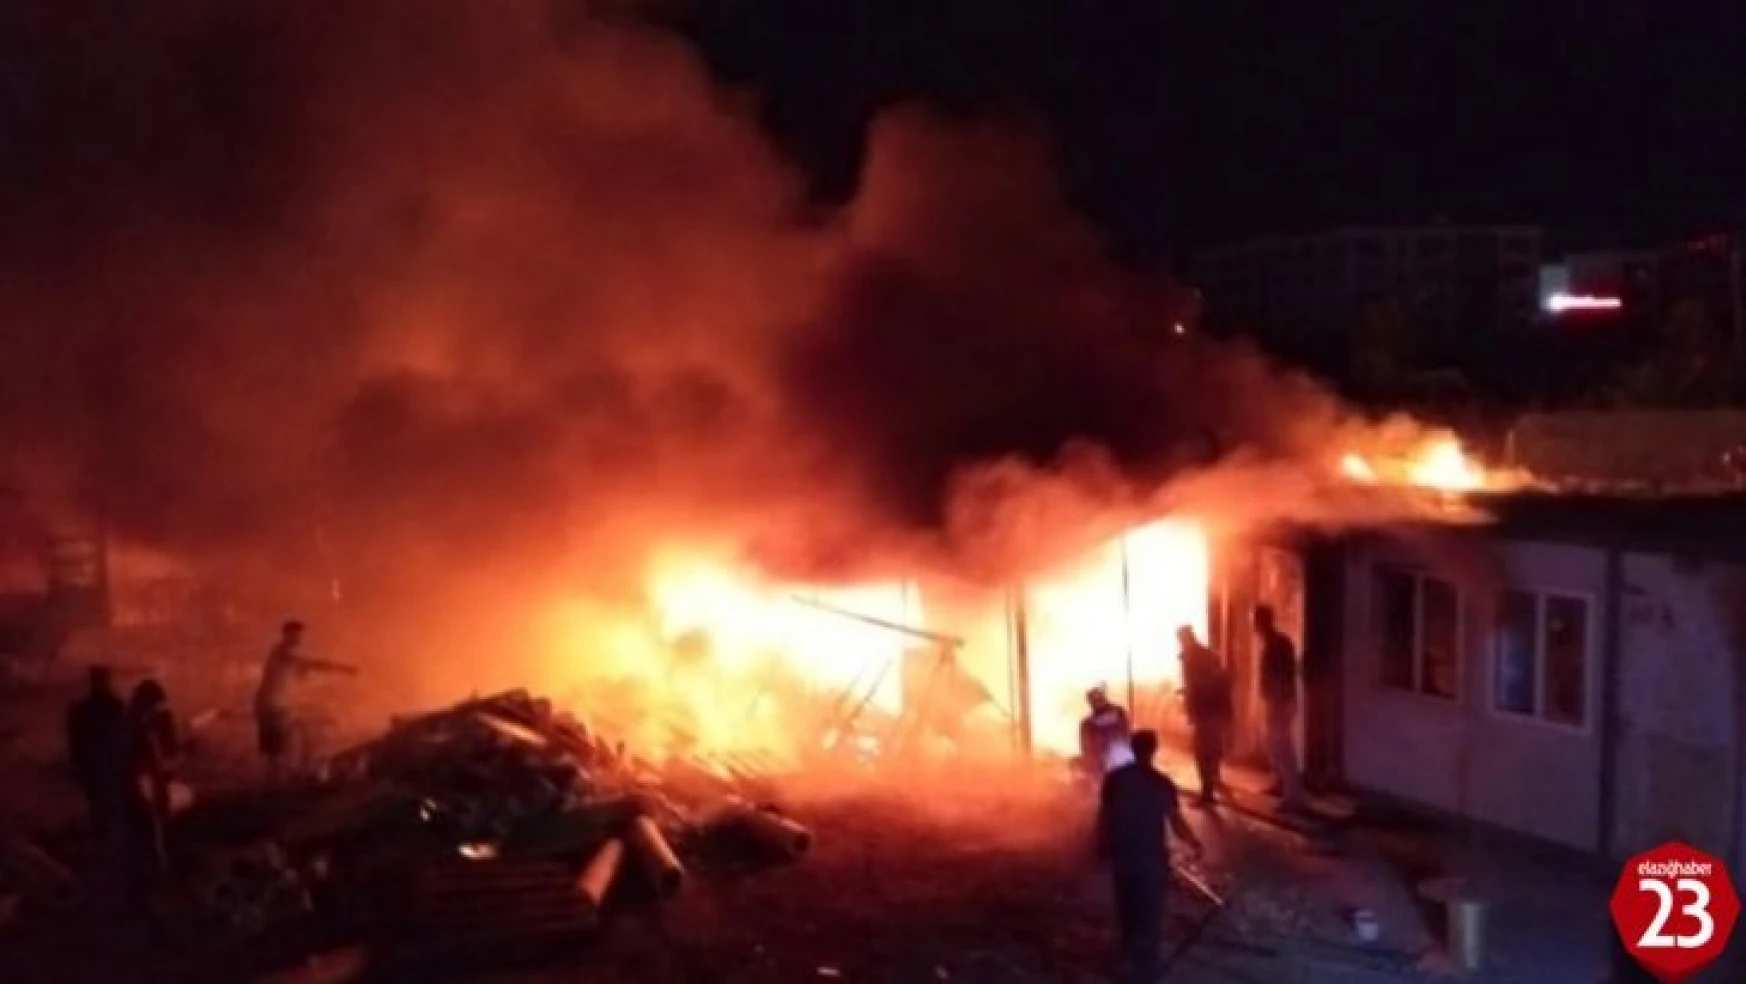 Sürsürü Mahallesinde İşçilerin Kaldığı Konteynerde Yangın